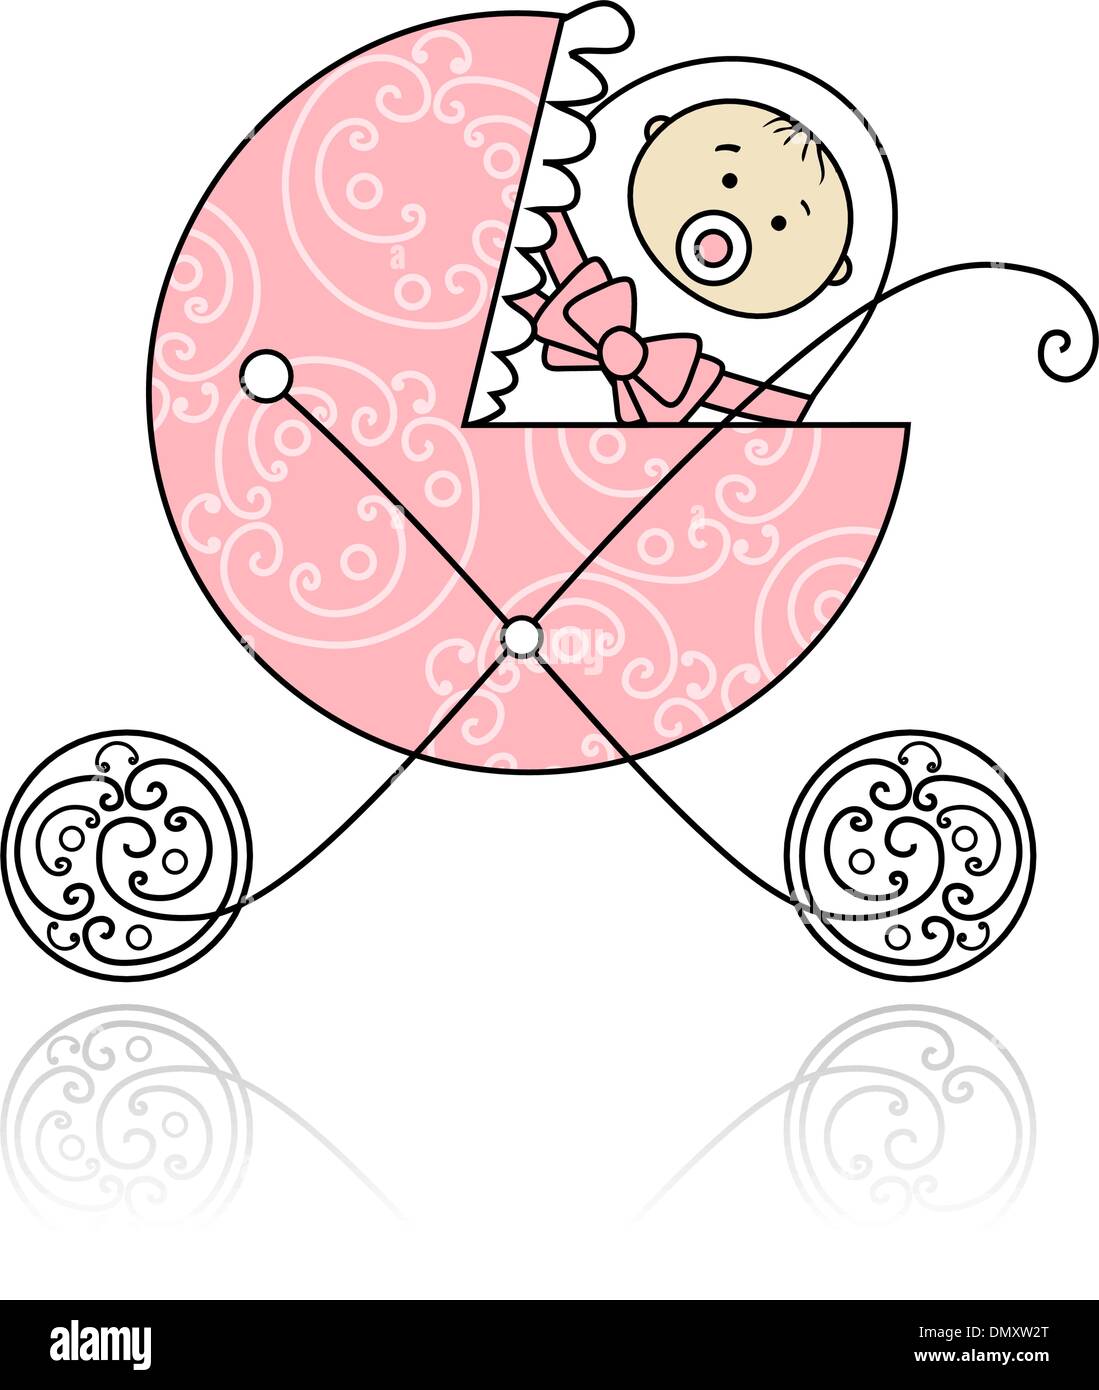 Neugeborenen im Kinderwagen für Ihr design Stock Vektor